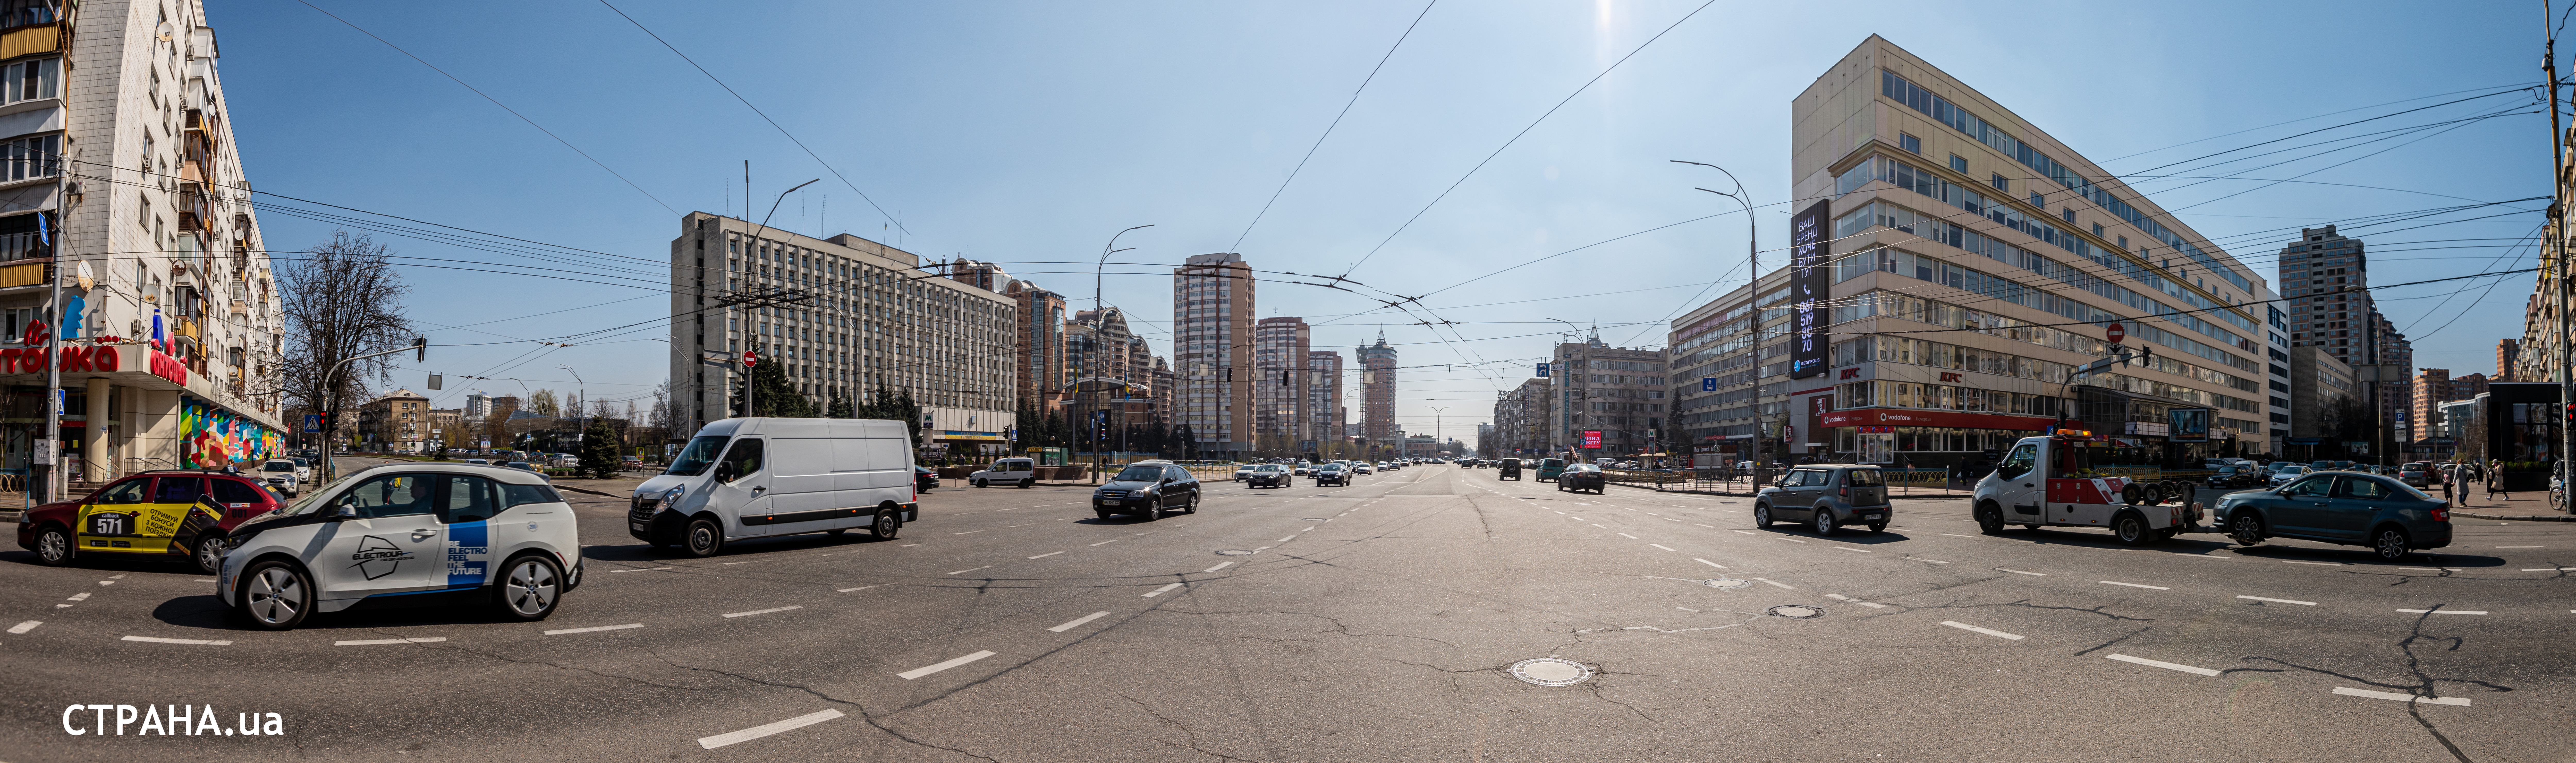 бульвар Украинки